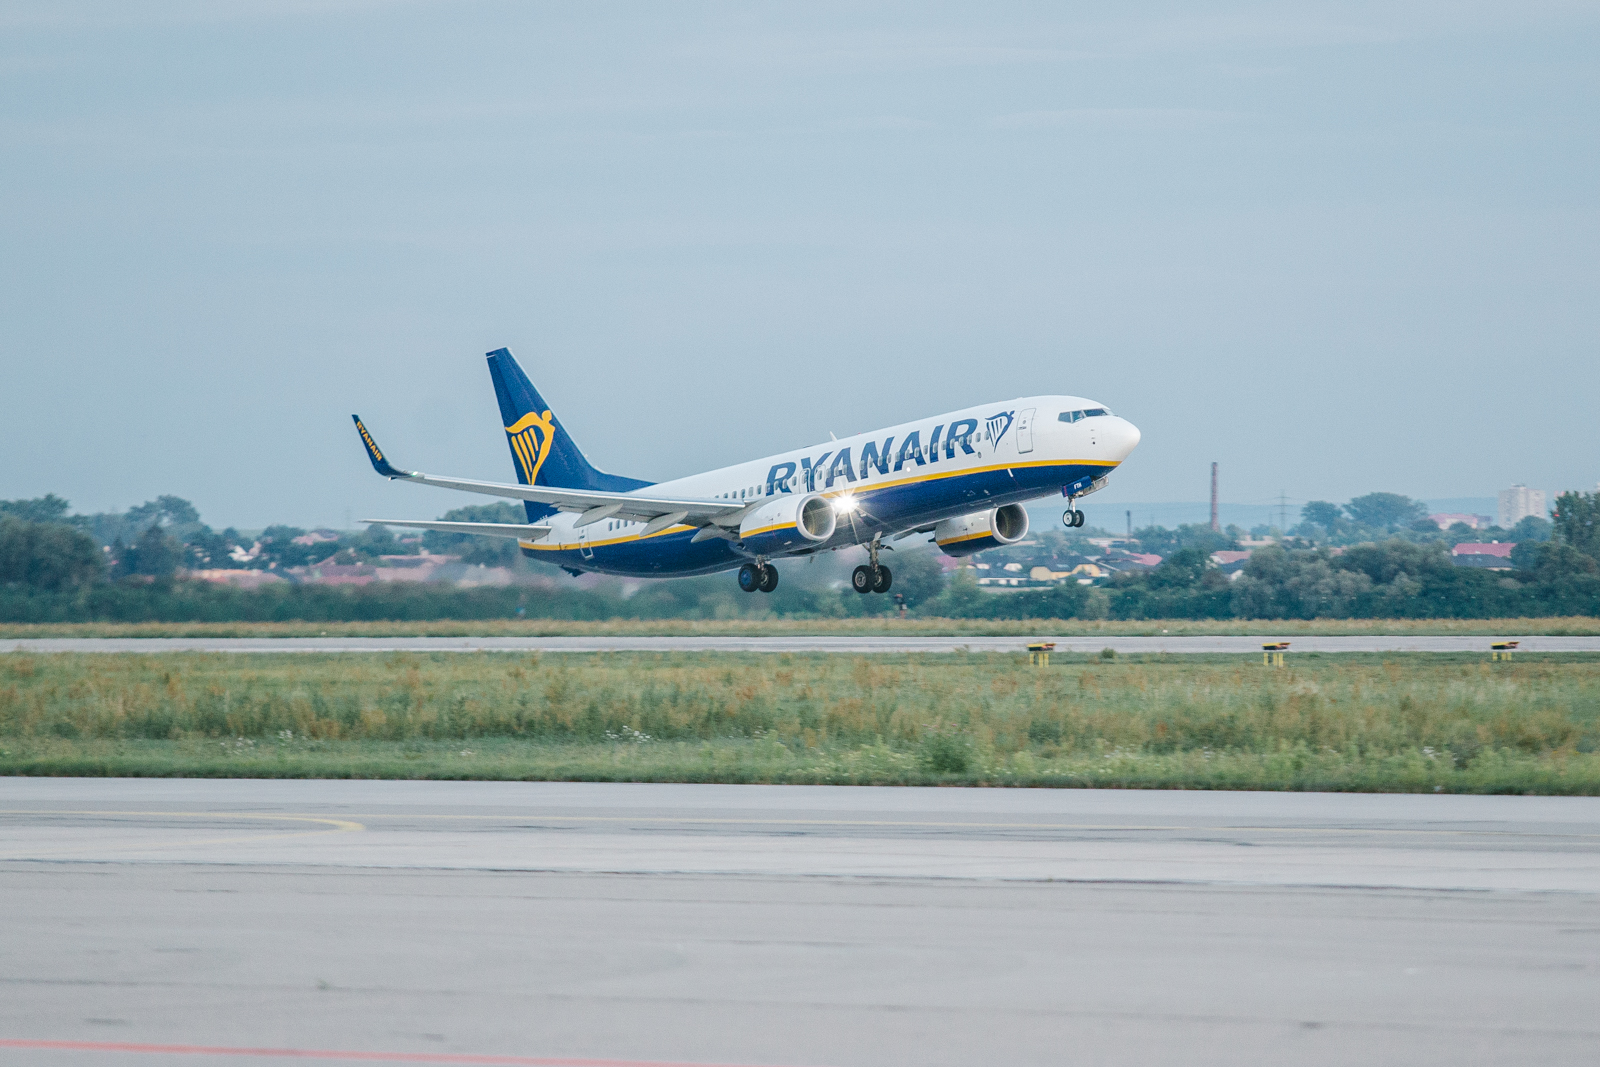 Tráfego Da Ryanair Em Novembro Aumenta 6% Para 9.3 Milhões De Passageiros